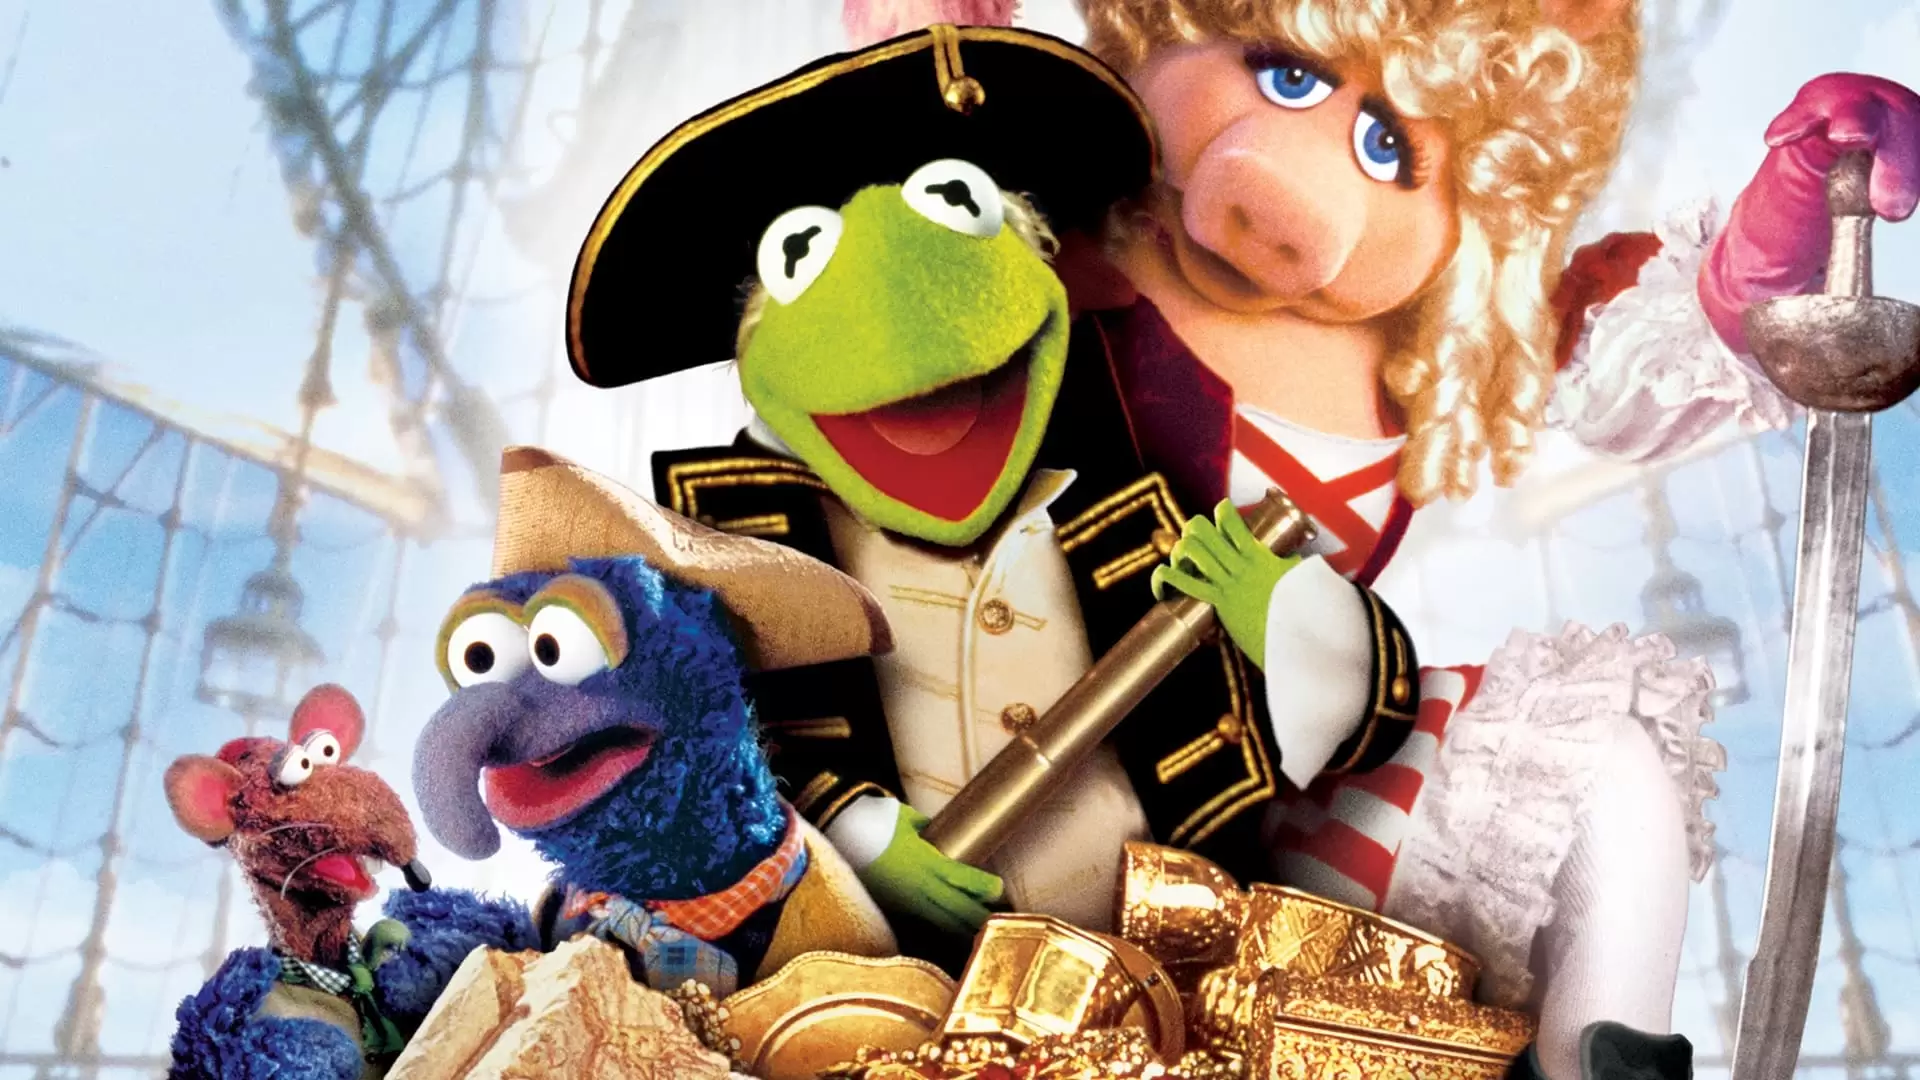 دانلود فیلم Muppet Treasure Island 1996